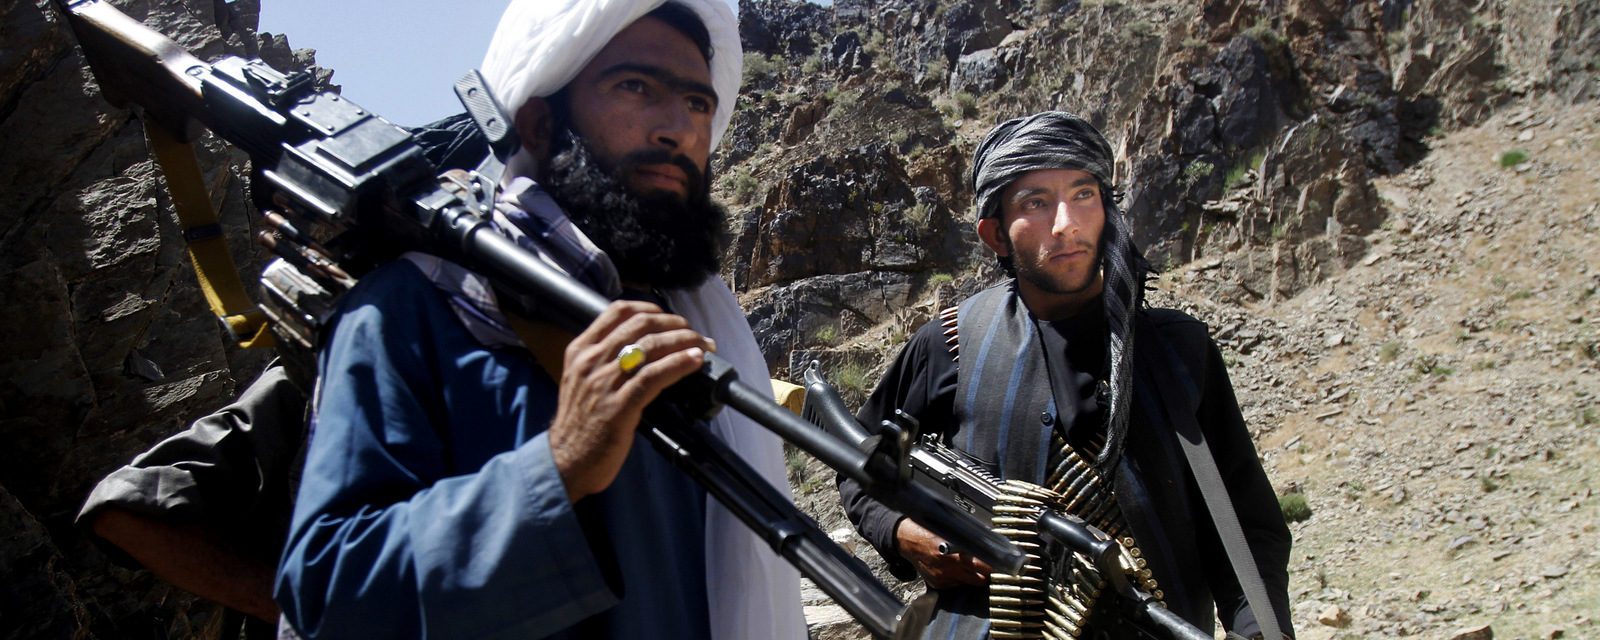 Combattants Taliban dans le district de Shindand, province afghane de Herat. (Source : Mint Press news)